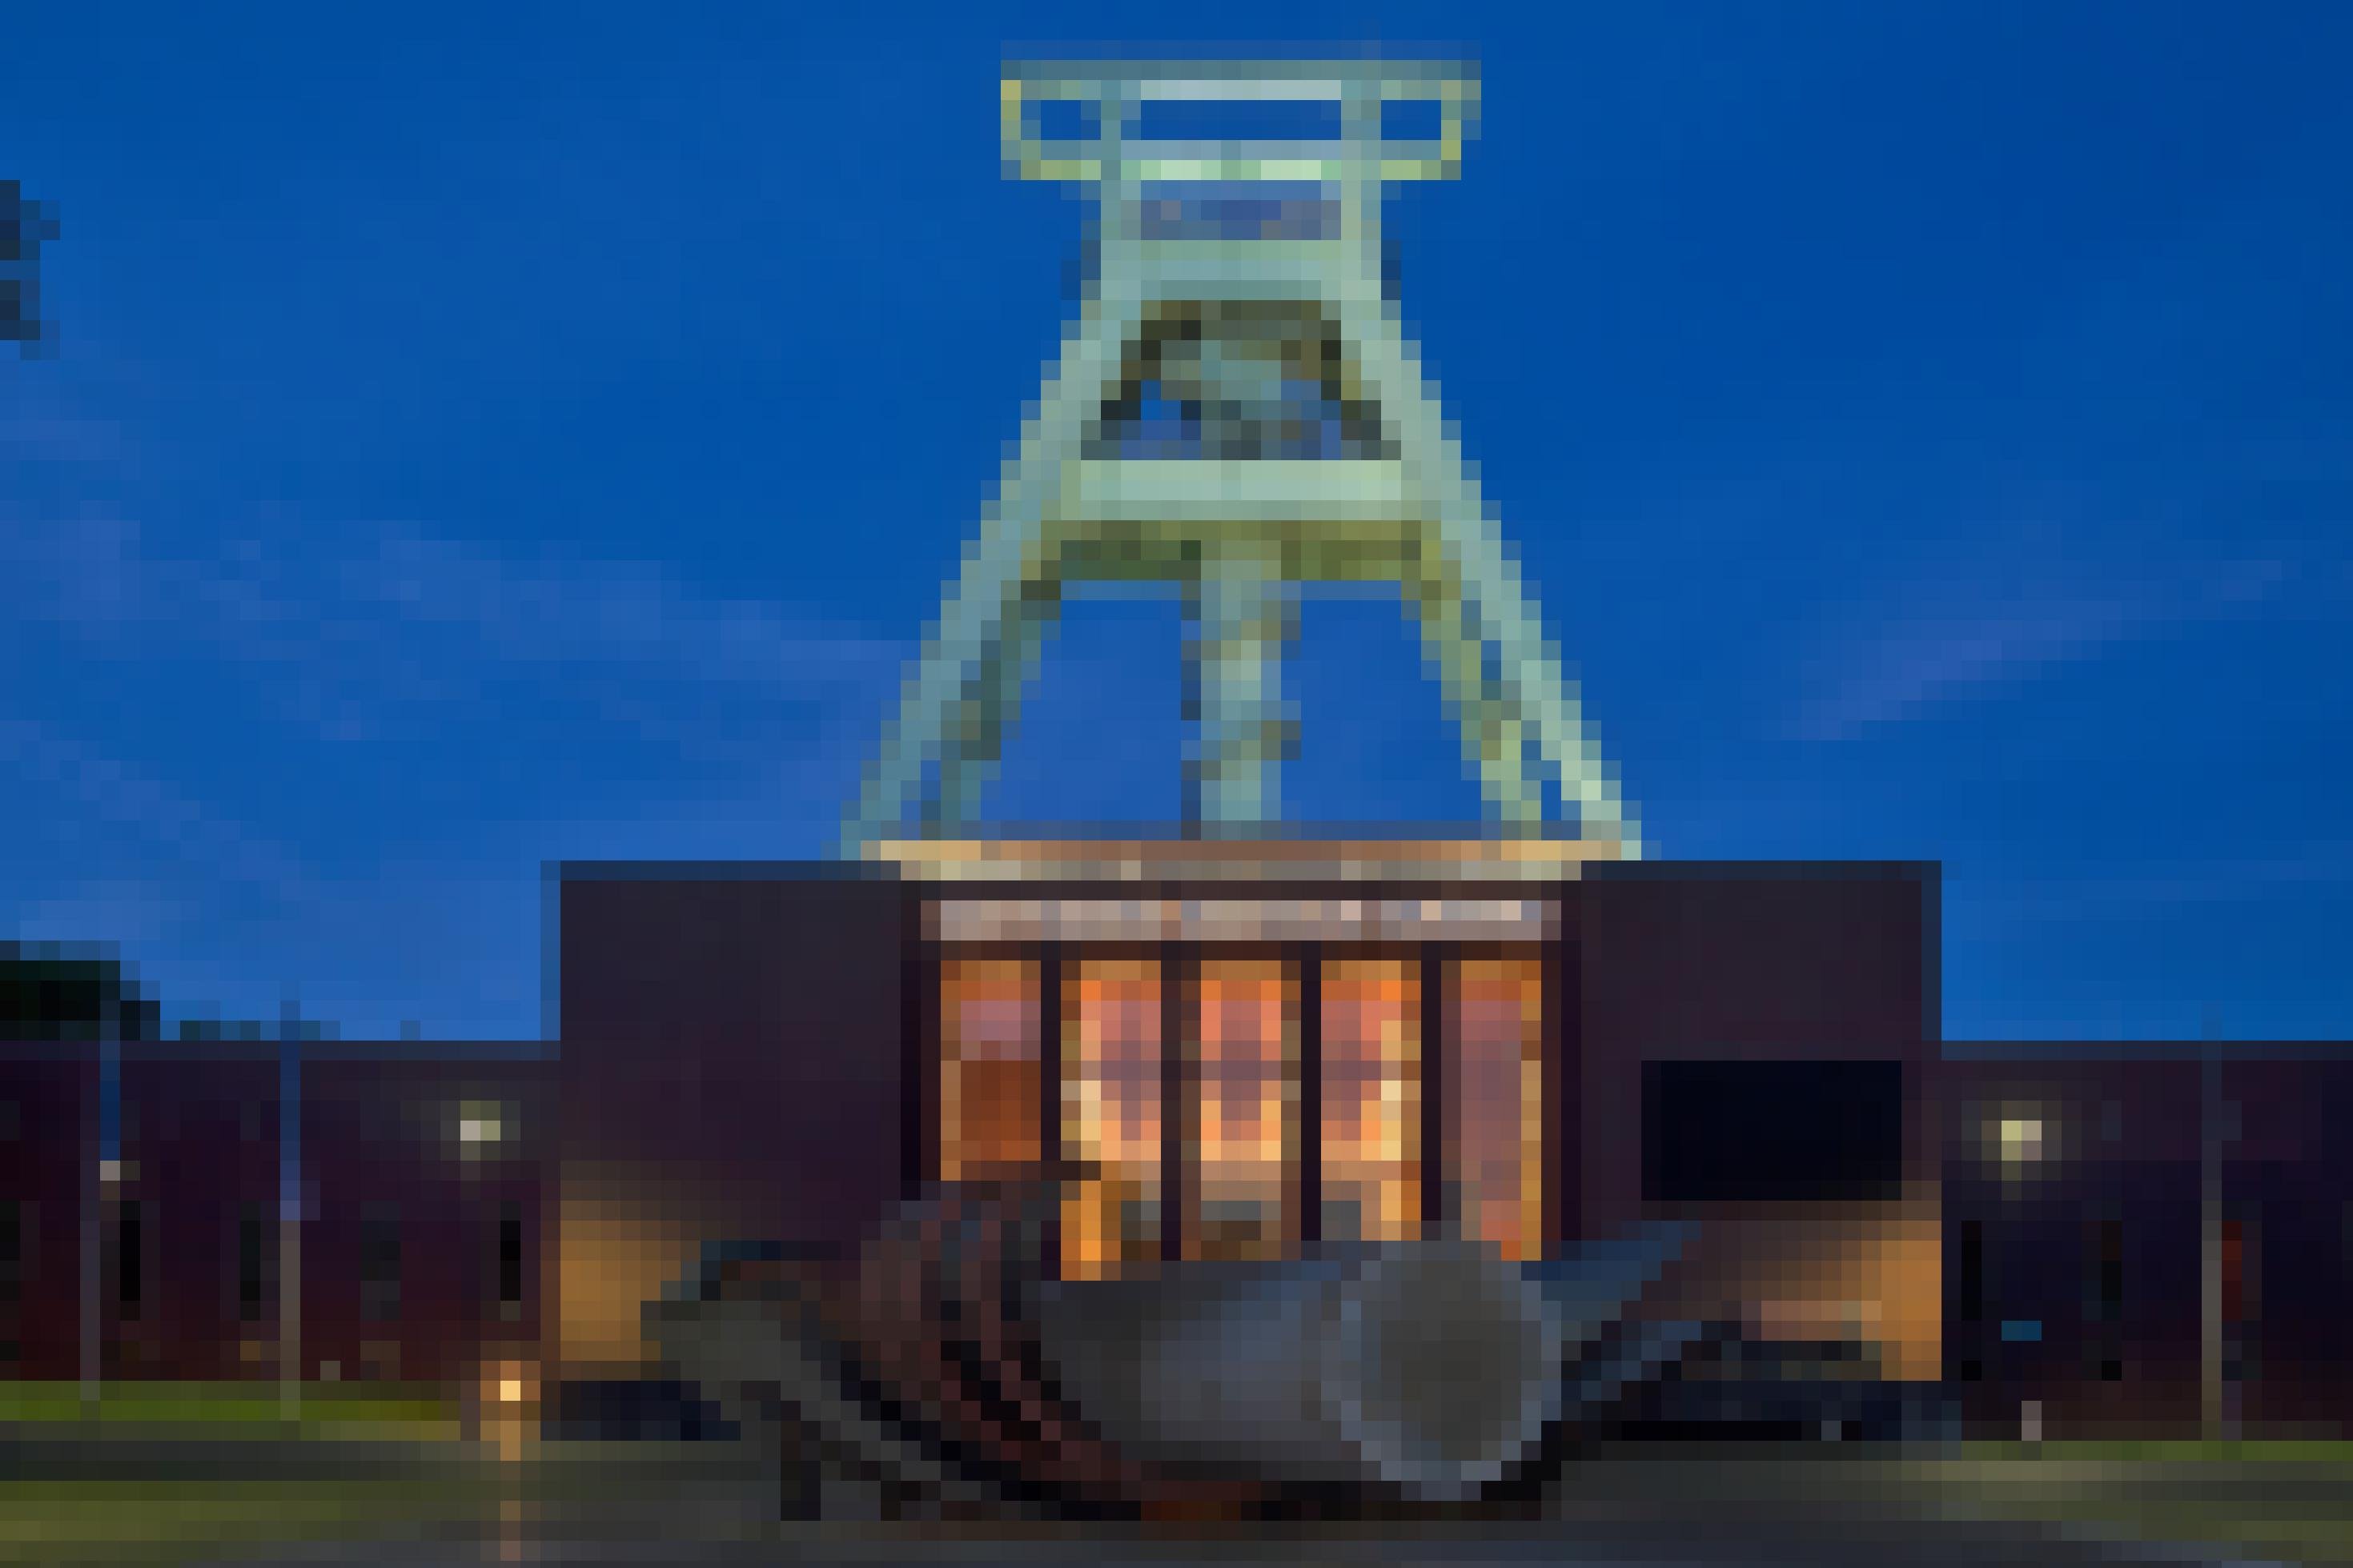 Das Foto zeigt ein beleuchtetes Fördergerüst hinter einem Gebäude, auf dem in Leuchtbuchstaben Deutsches Bergbau-Museum zu lesen ist.